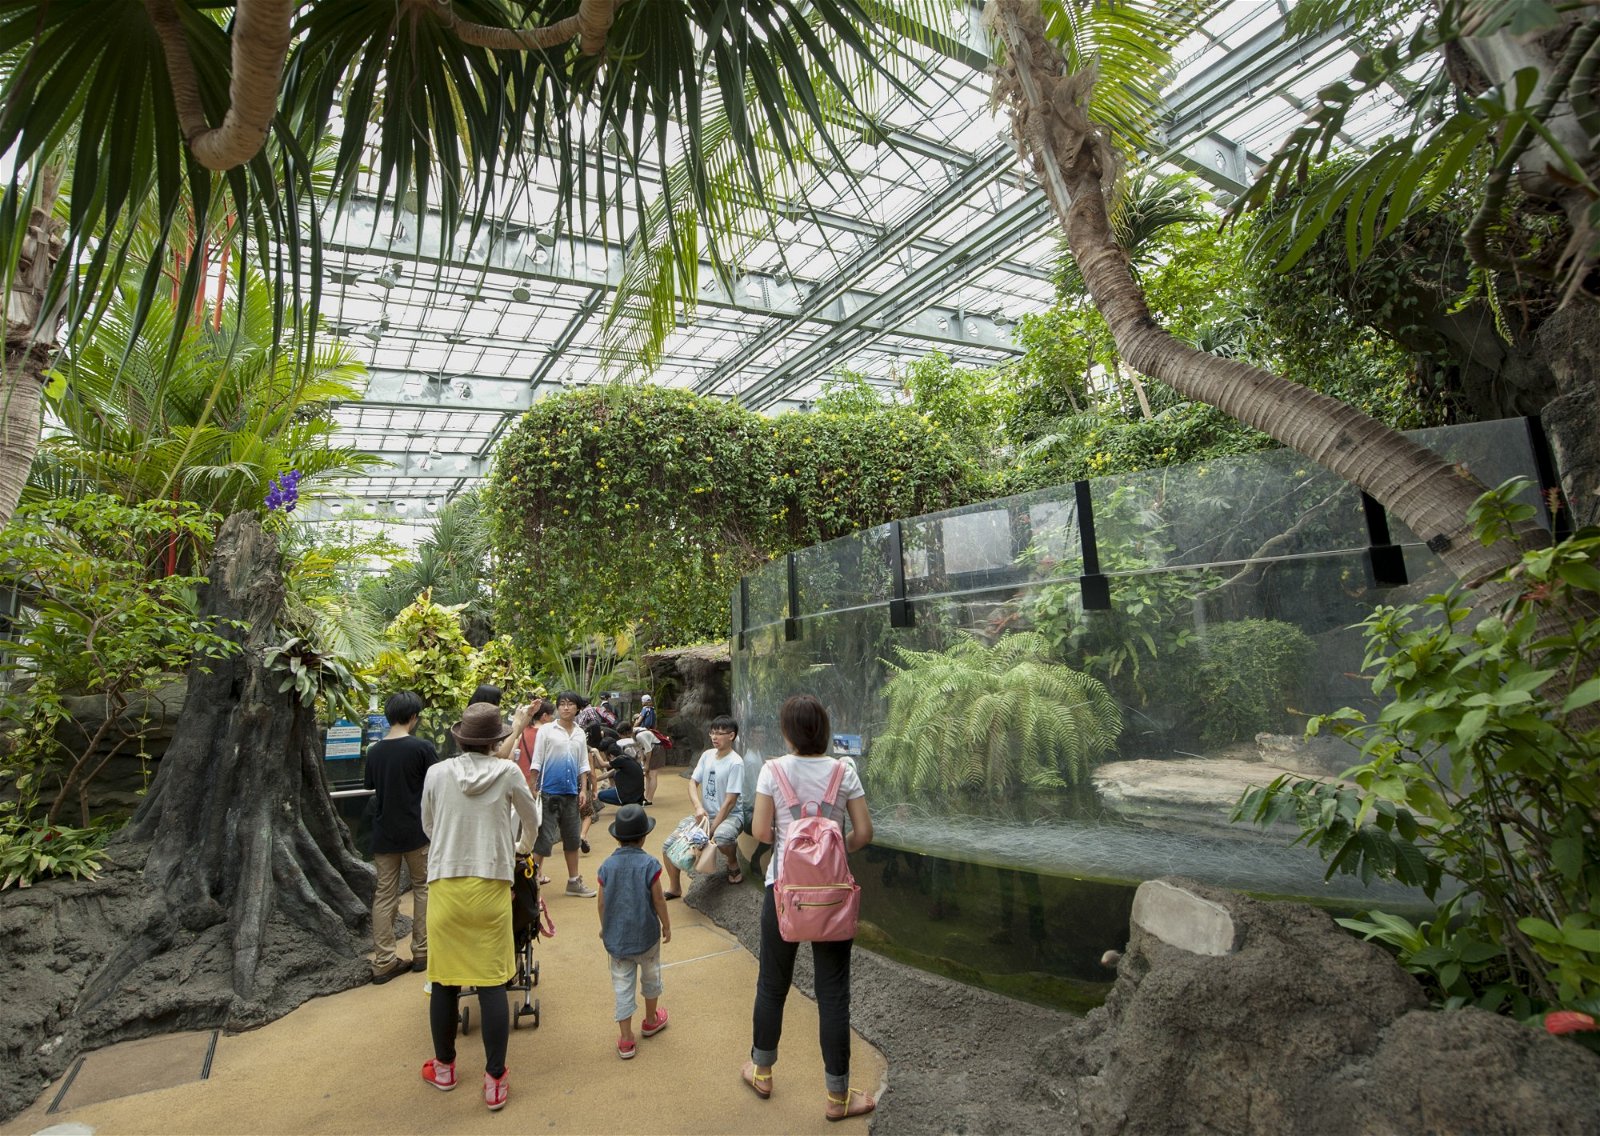 日本最古老、入园人数最多的东京上野动物园早在2005年就已推行与动物“零距离”的动物园展示规划，舍弃冰冷的栅栏，采用透明水族箱，让游客近距离观察动物的行动。